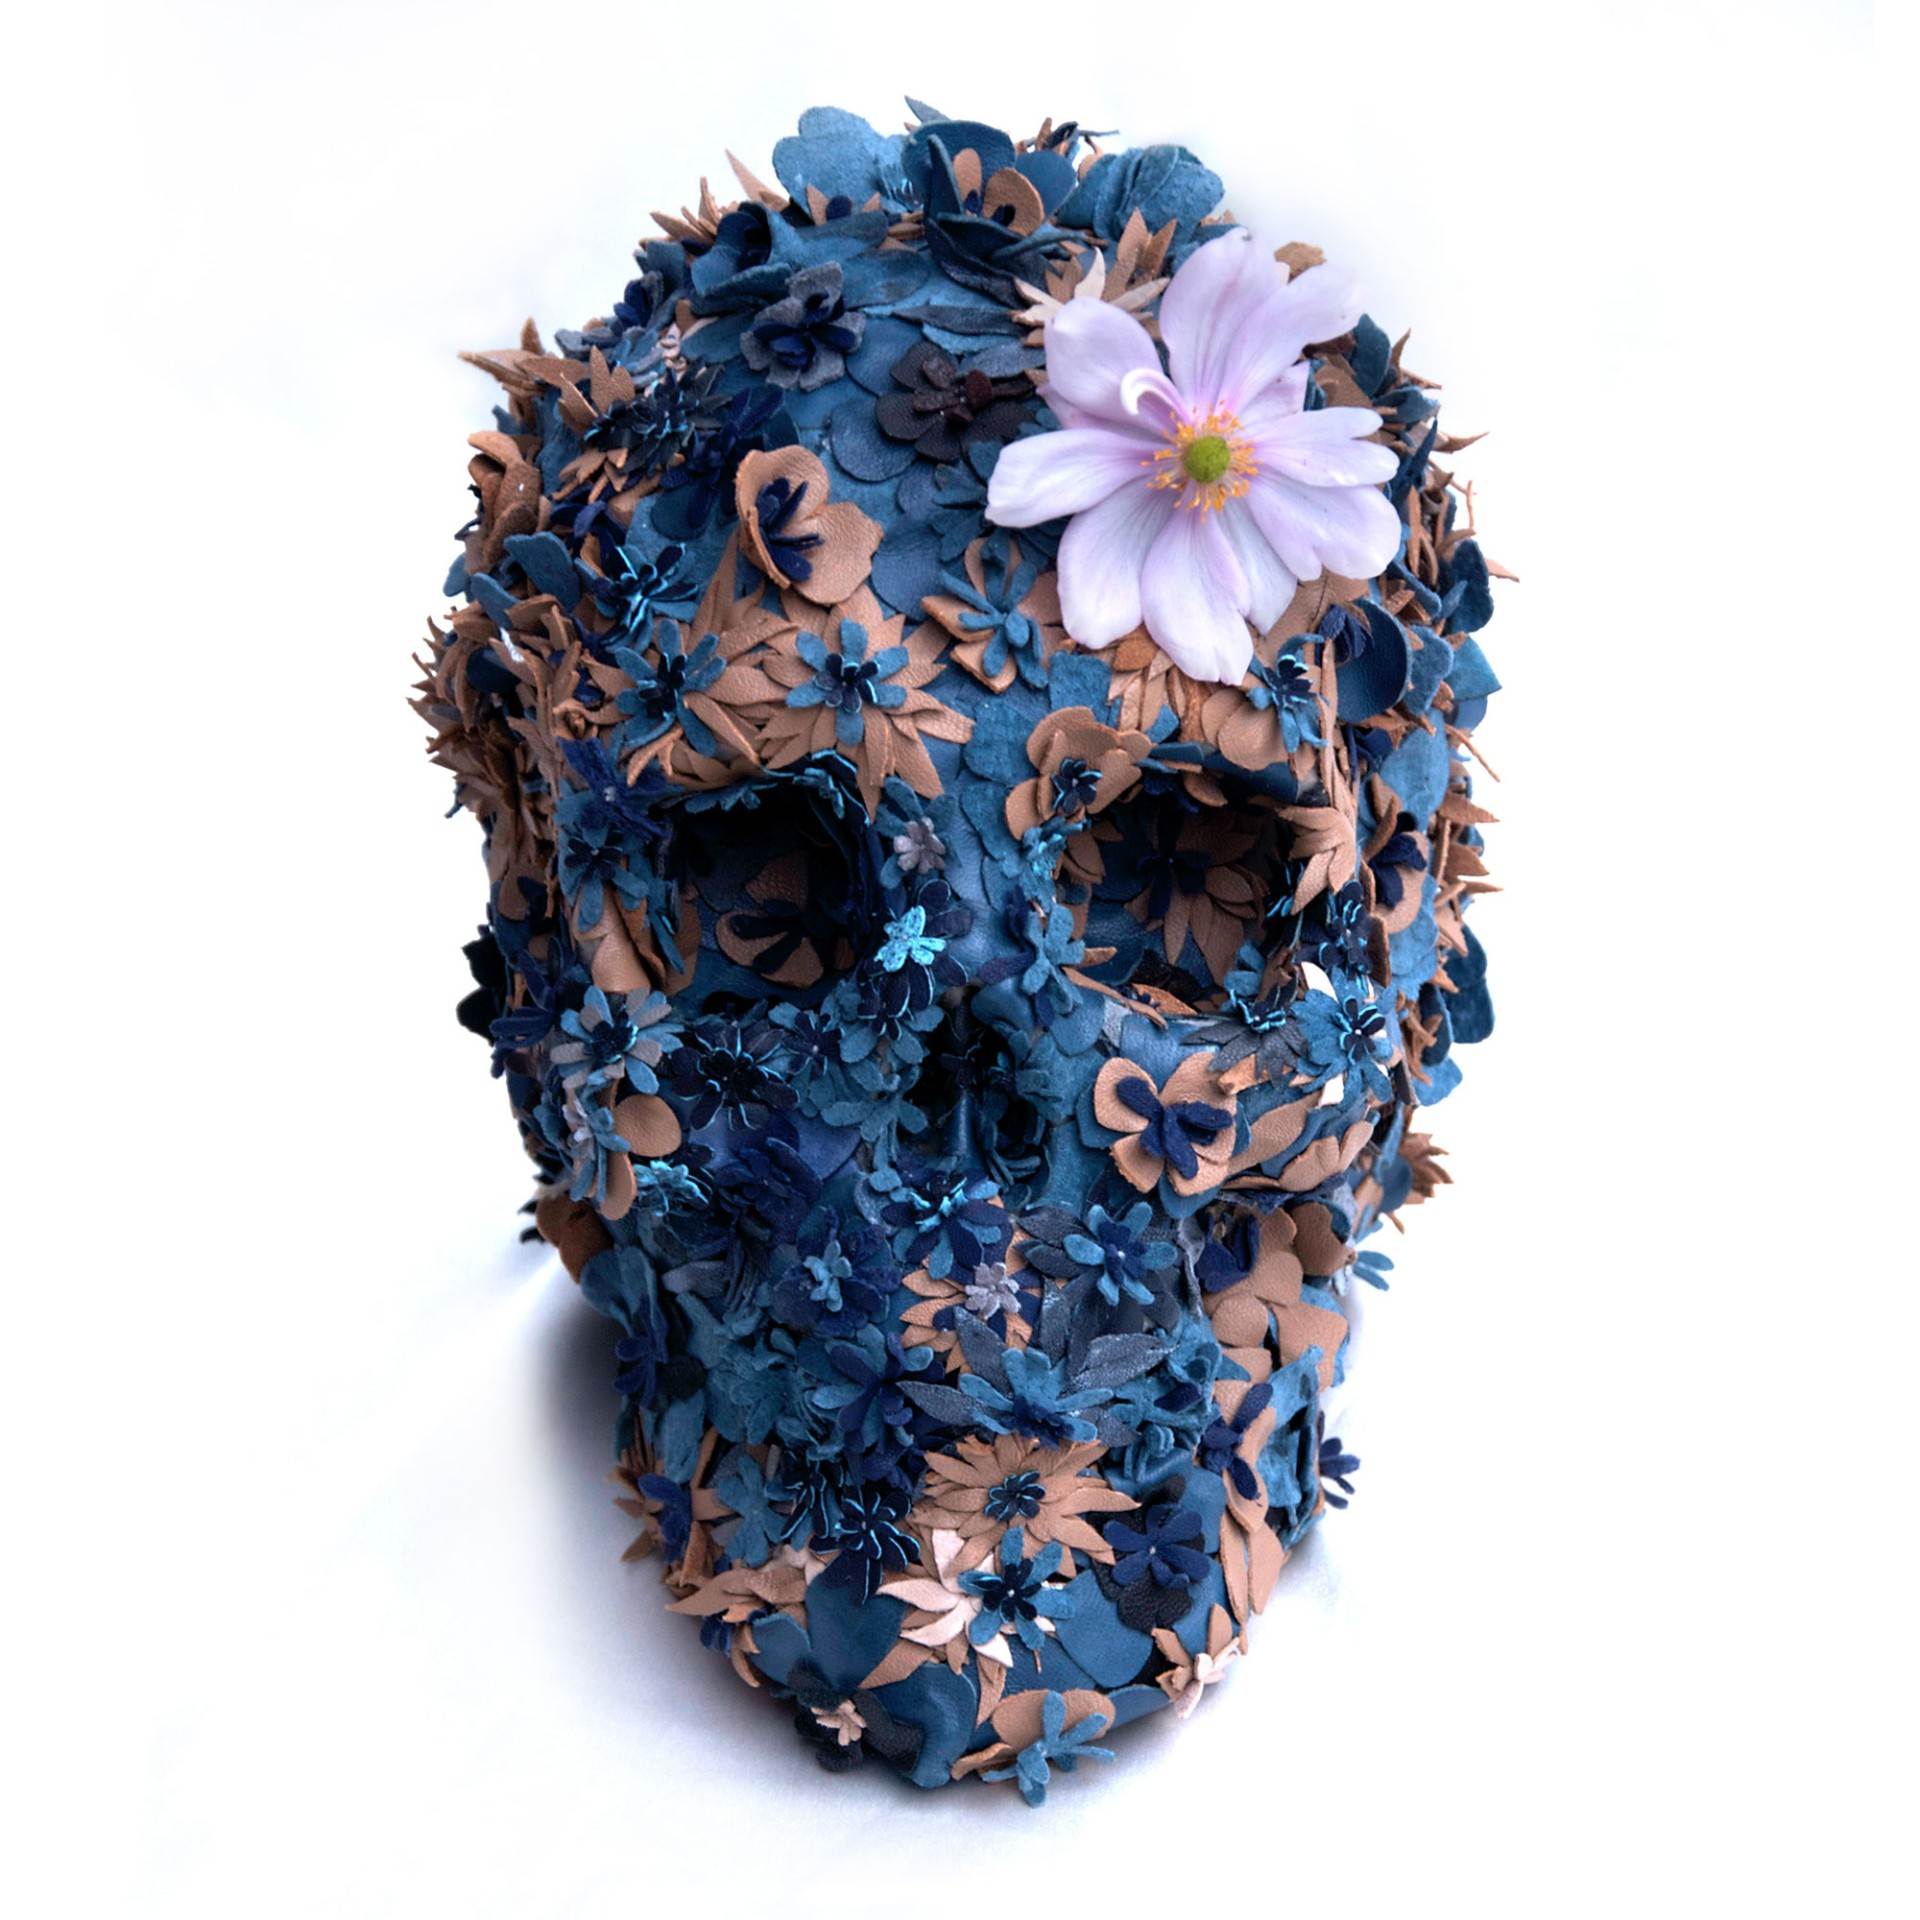 Life-size Floral Skullpture